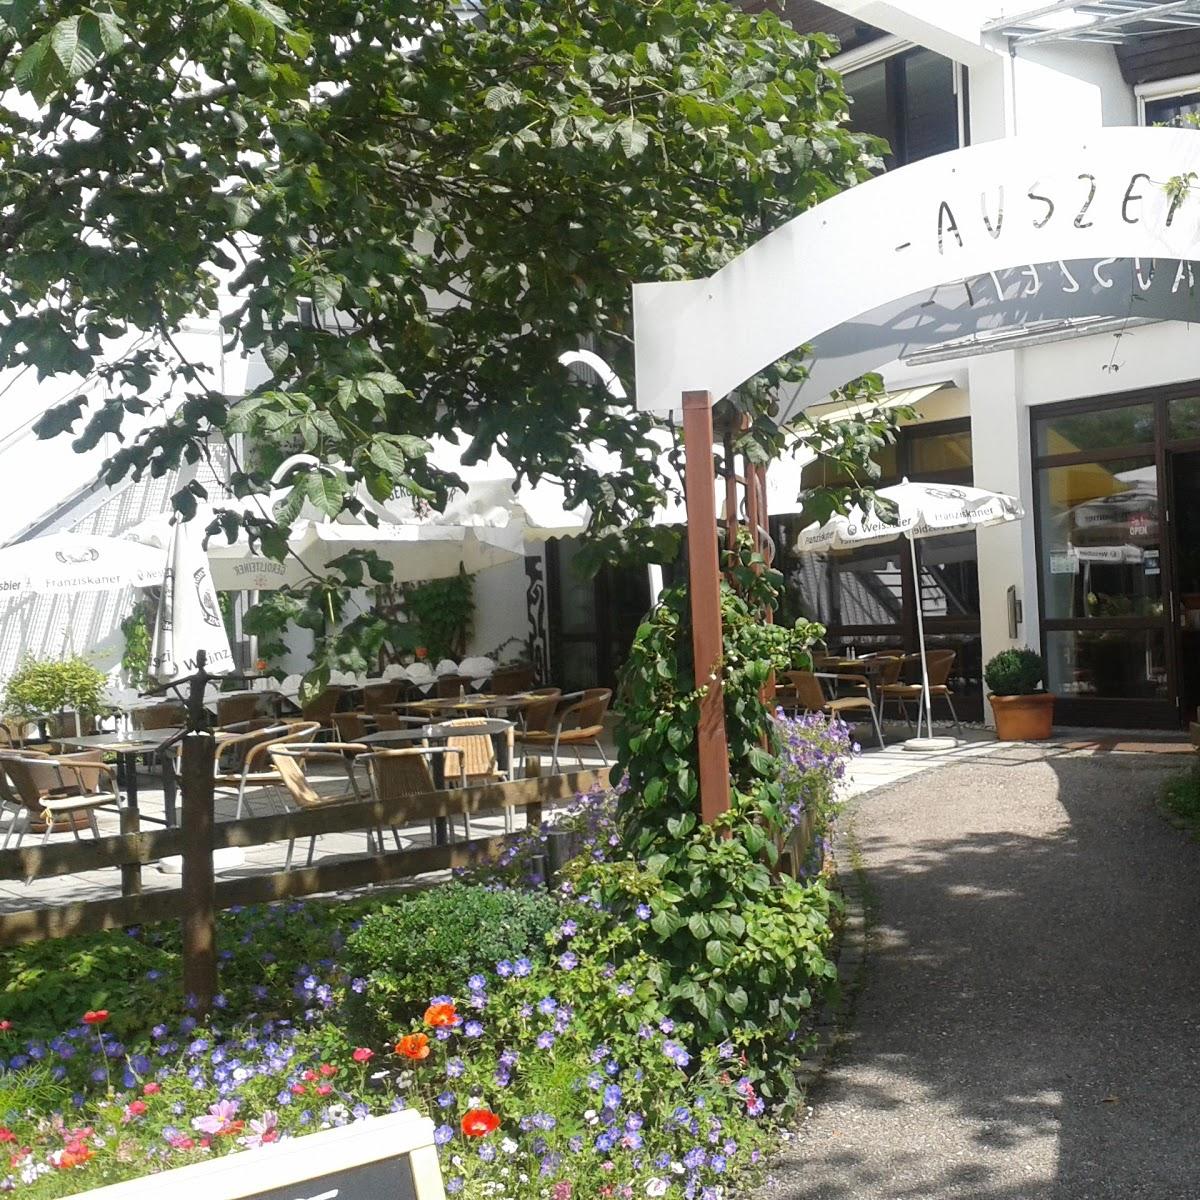 Restaurant "Restaurant Auszeit" in  Staffelsee